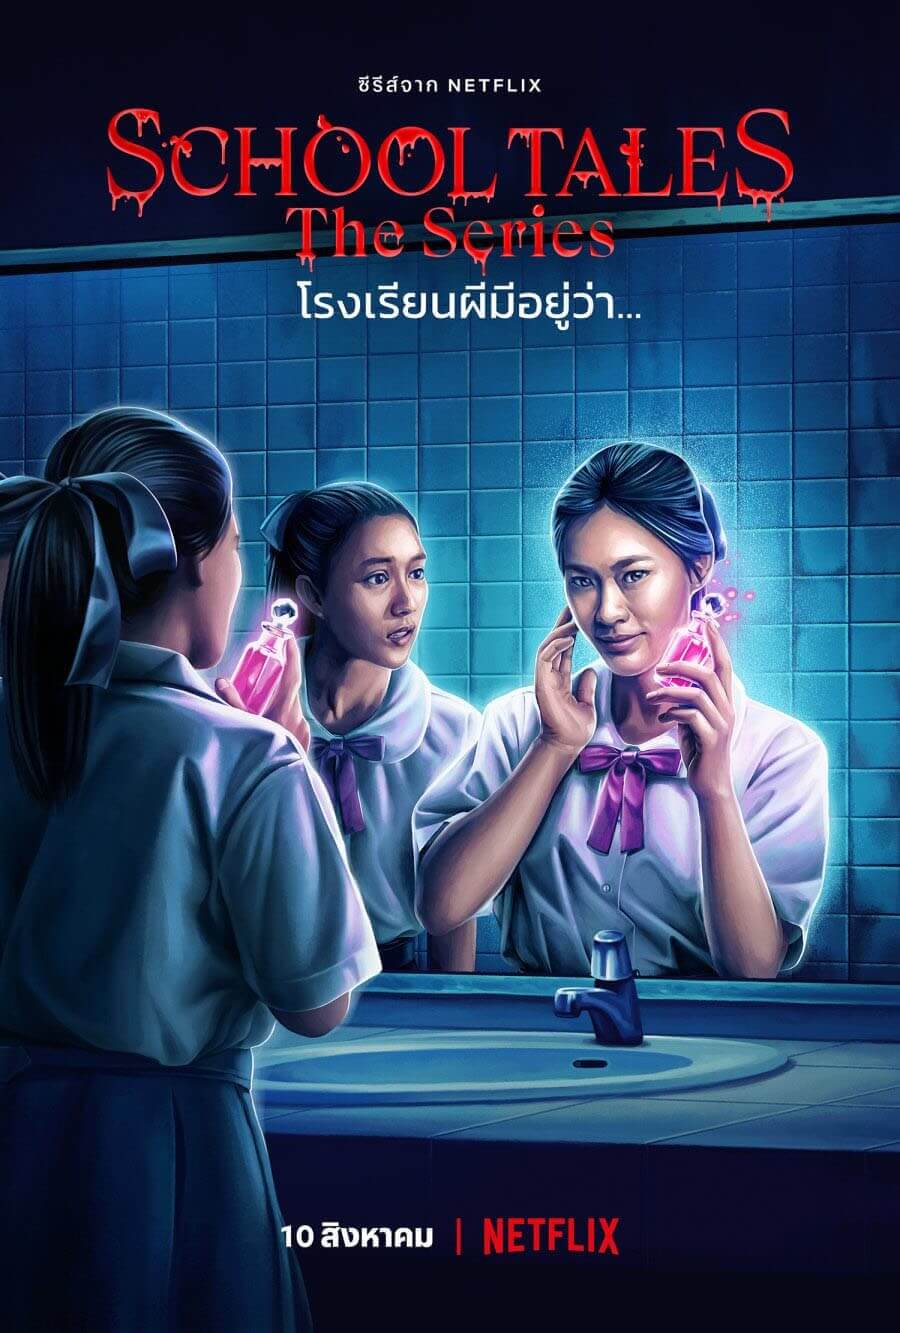 school tales thai horror anthology netflix episode 3